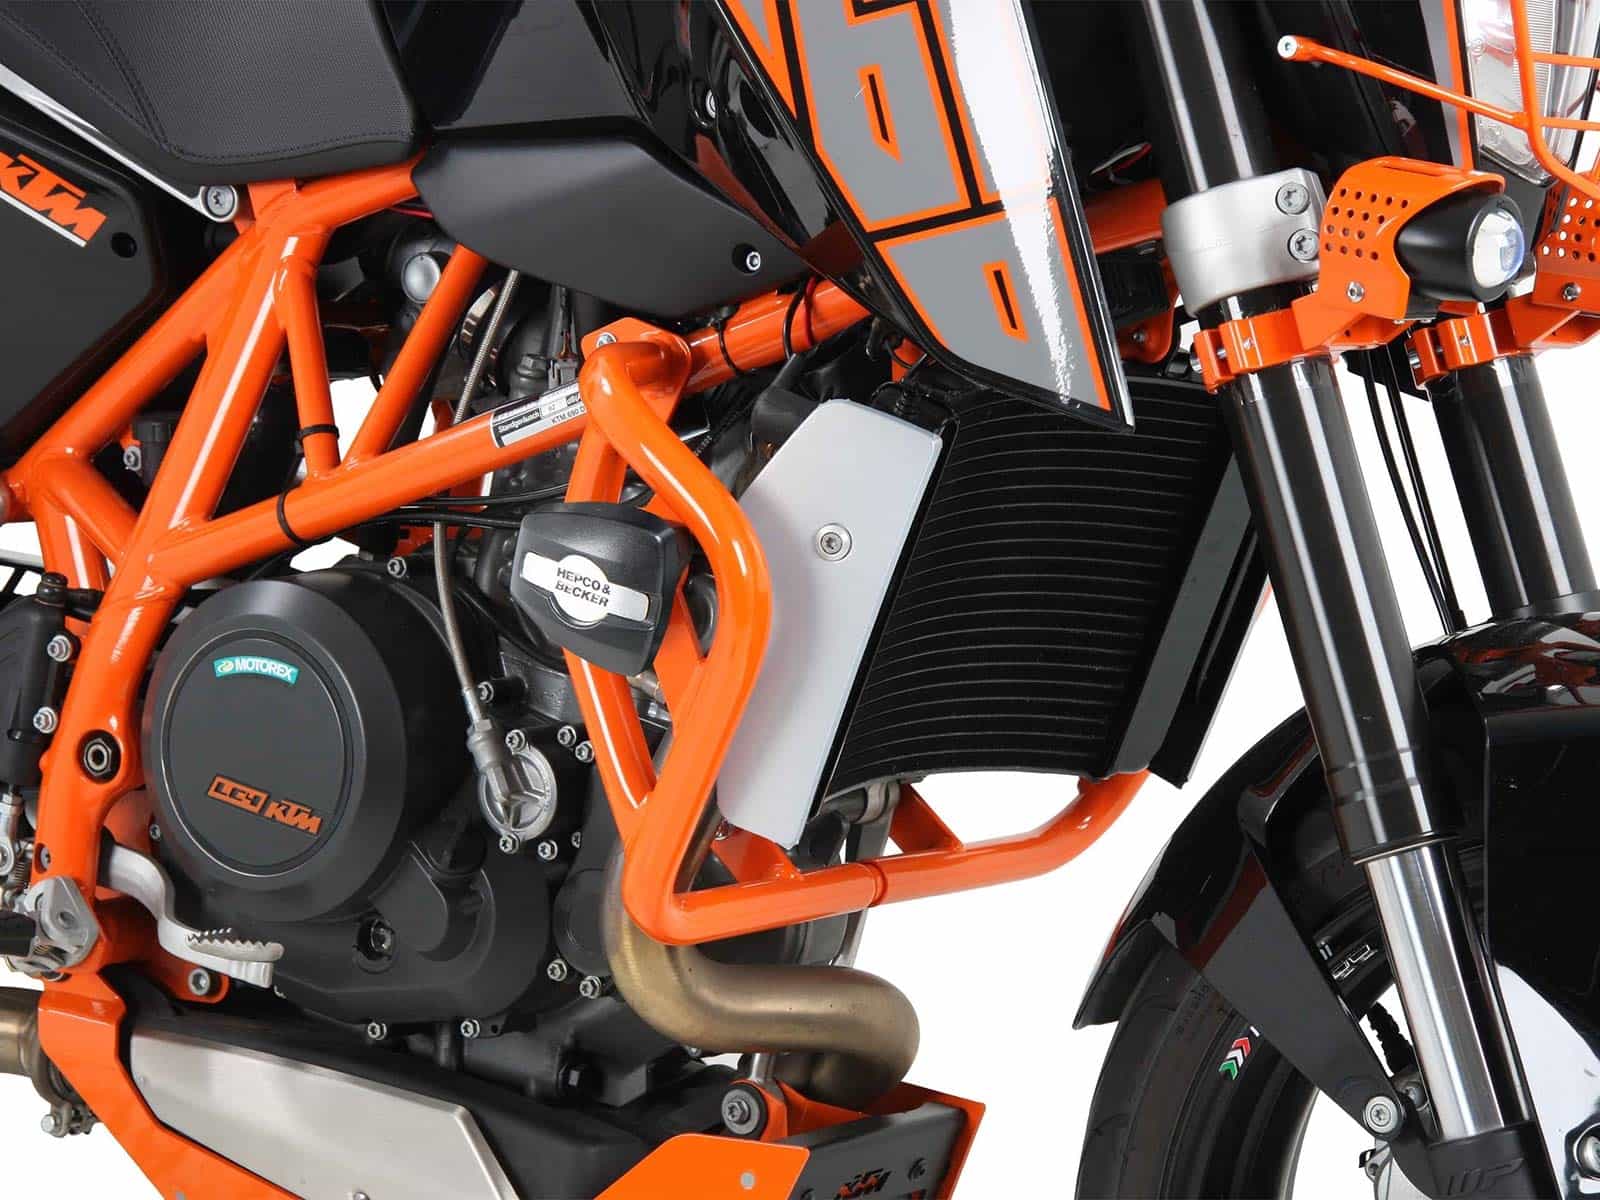 Motorschutzbügel inkl. Protectionpad orange für KTM 690 Duke/R (2012-2015)